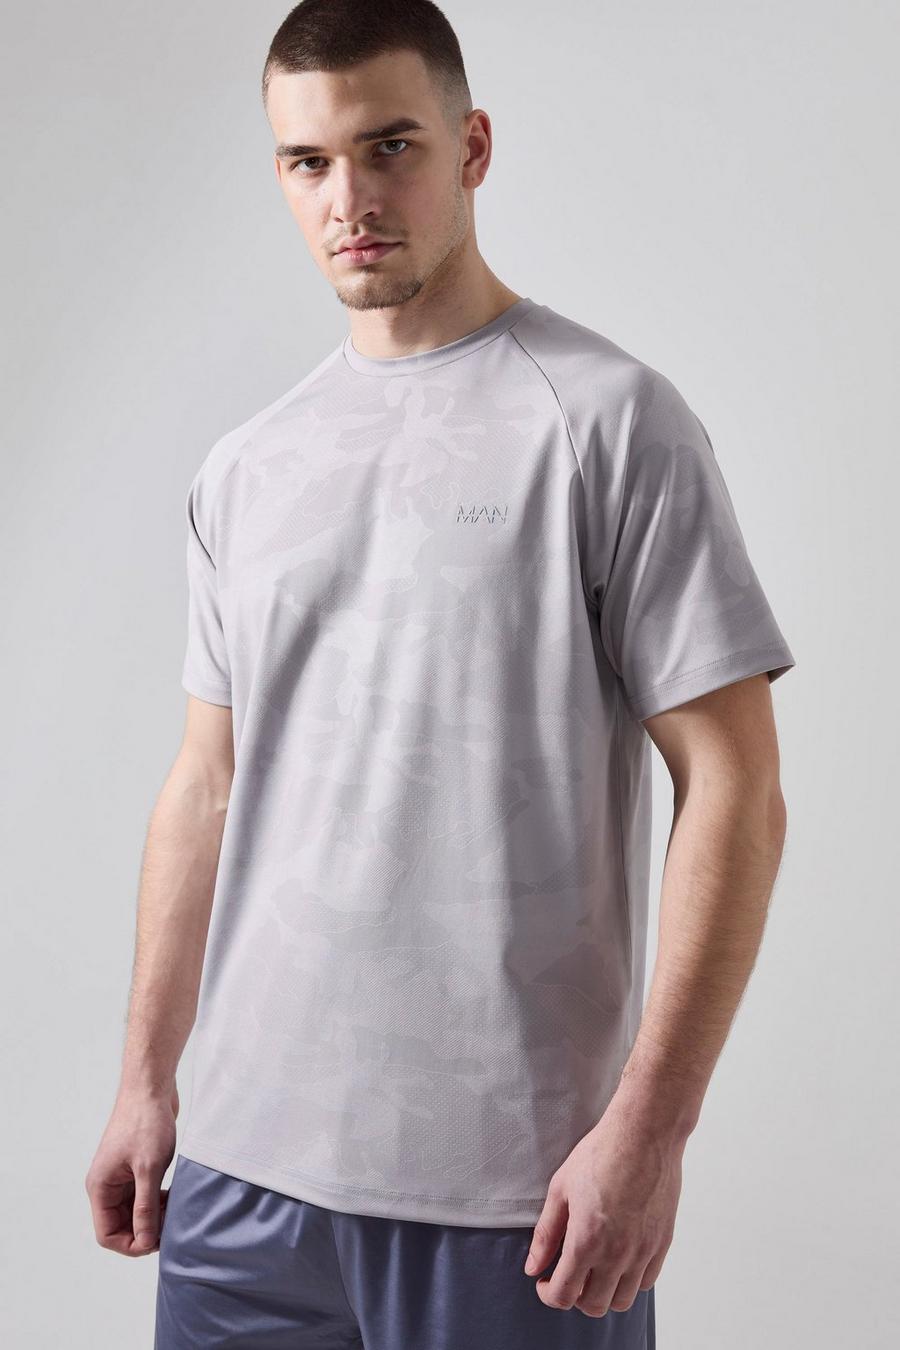 Grey Tall Man Active Camo Raglan Performance T-shirt